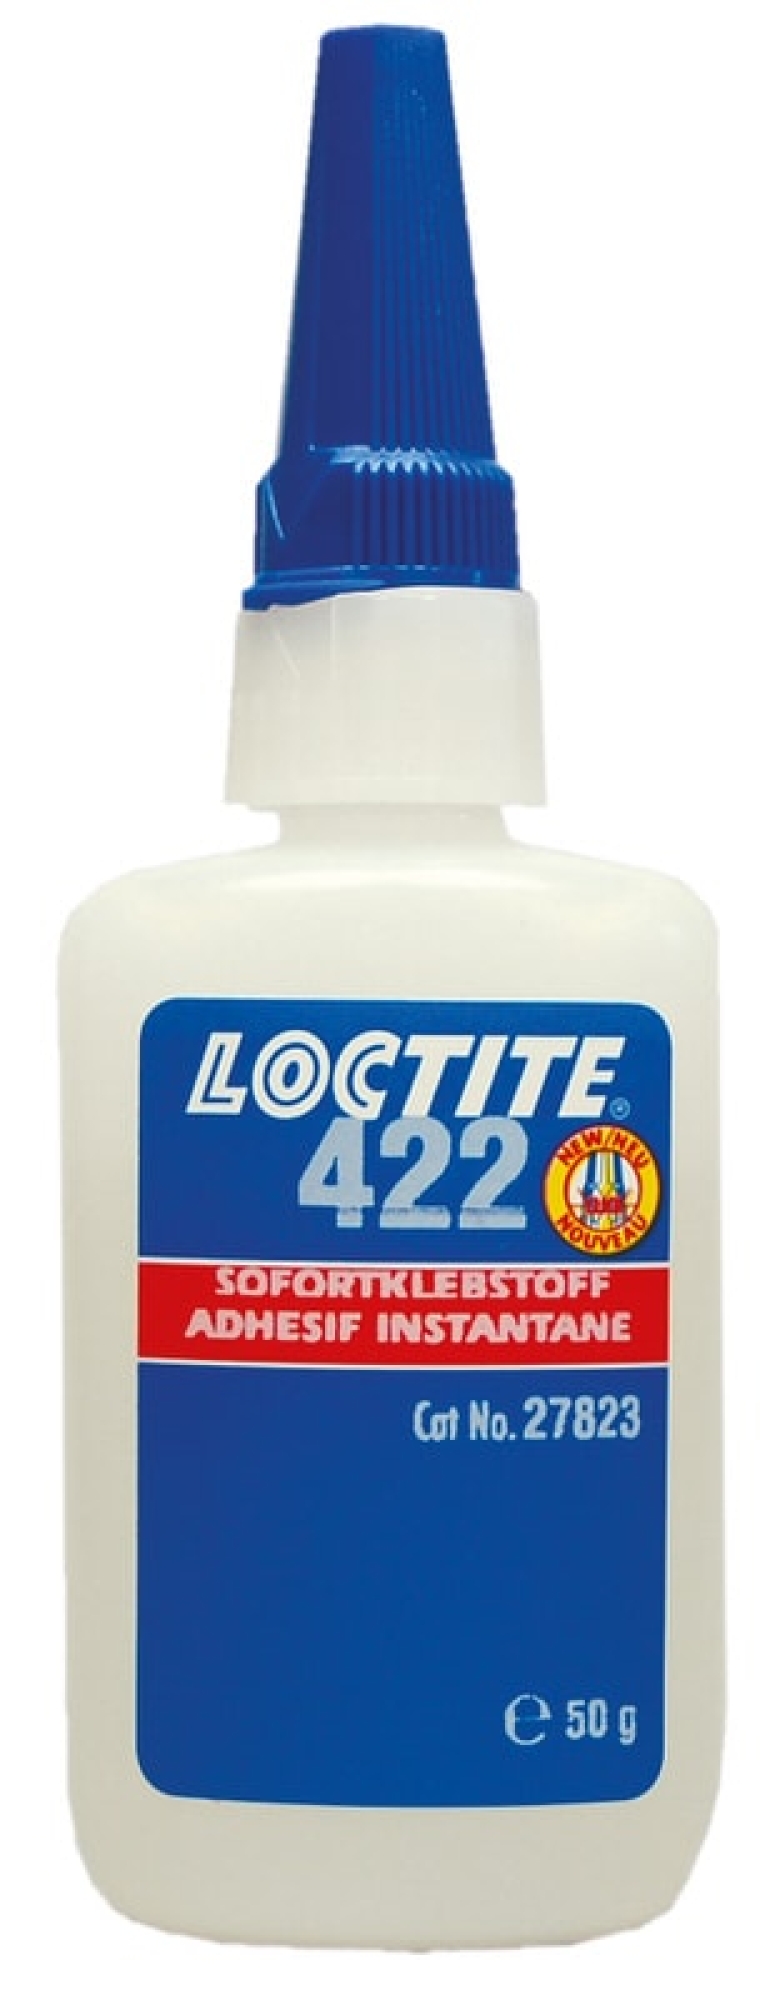 Loctite 422